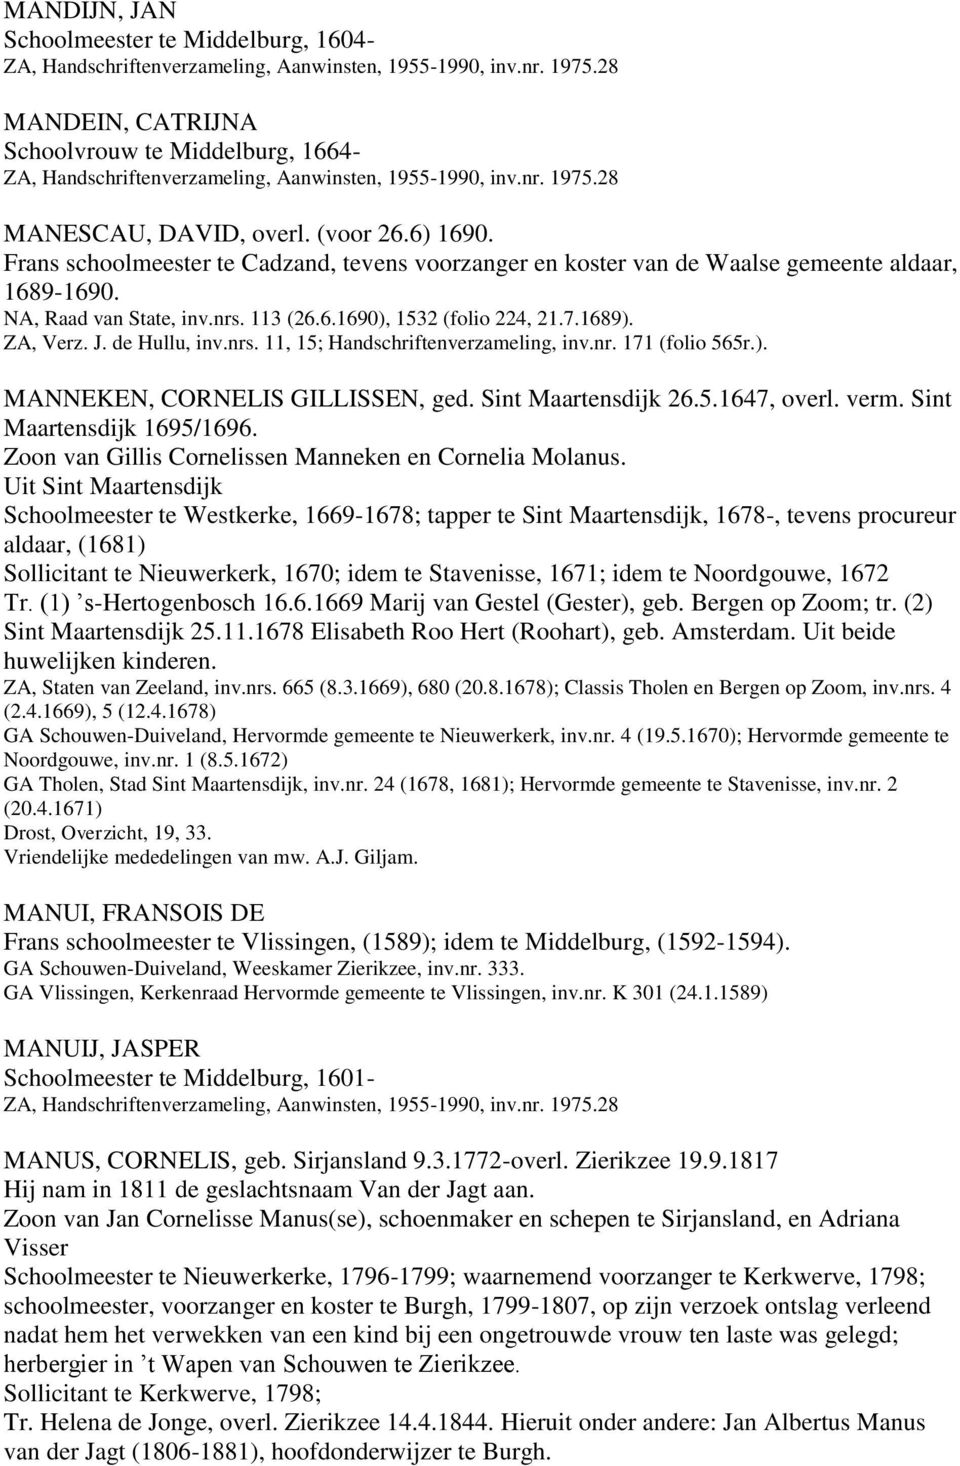 de Hullu, inv.nrs. 11, 15; Handschriftenverzameling, inv.nr. 171 (folio 565r.). MANNEKEN, CORNELIS GILLISSEN, ged. Sint Maartensdijk 26.5.1647, overl. verm. Sint Maartensdijk 1695/1696.